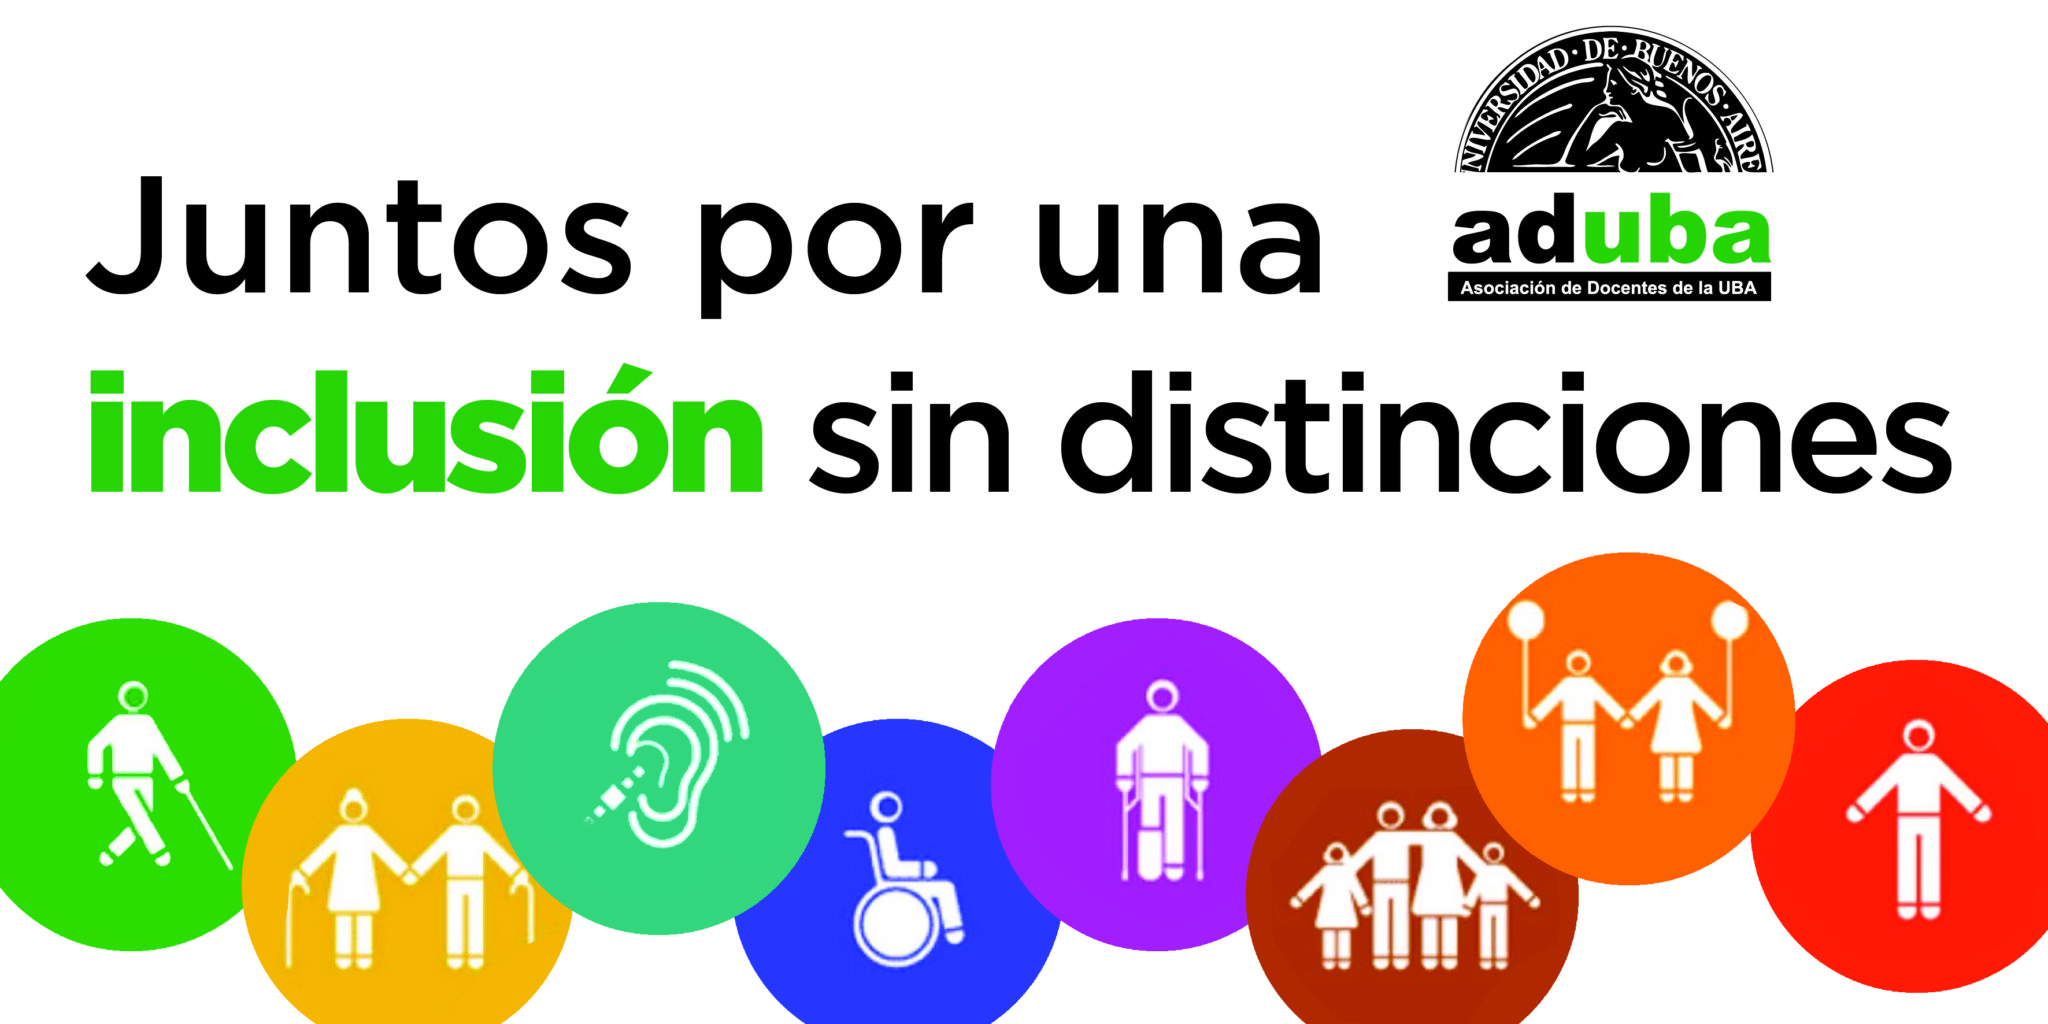 3 de diciembre | Día Internacional de las Personas con Discapacidad - ADUBA